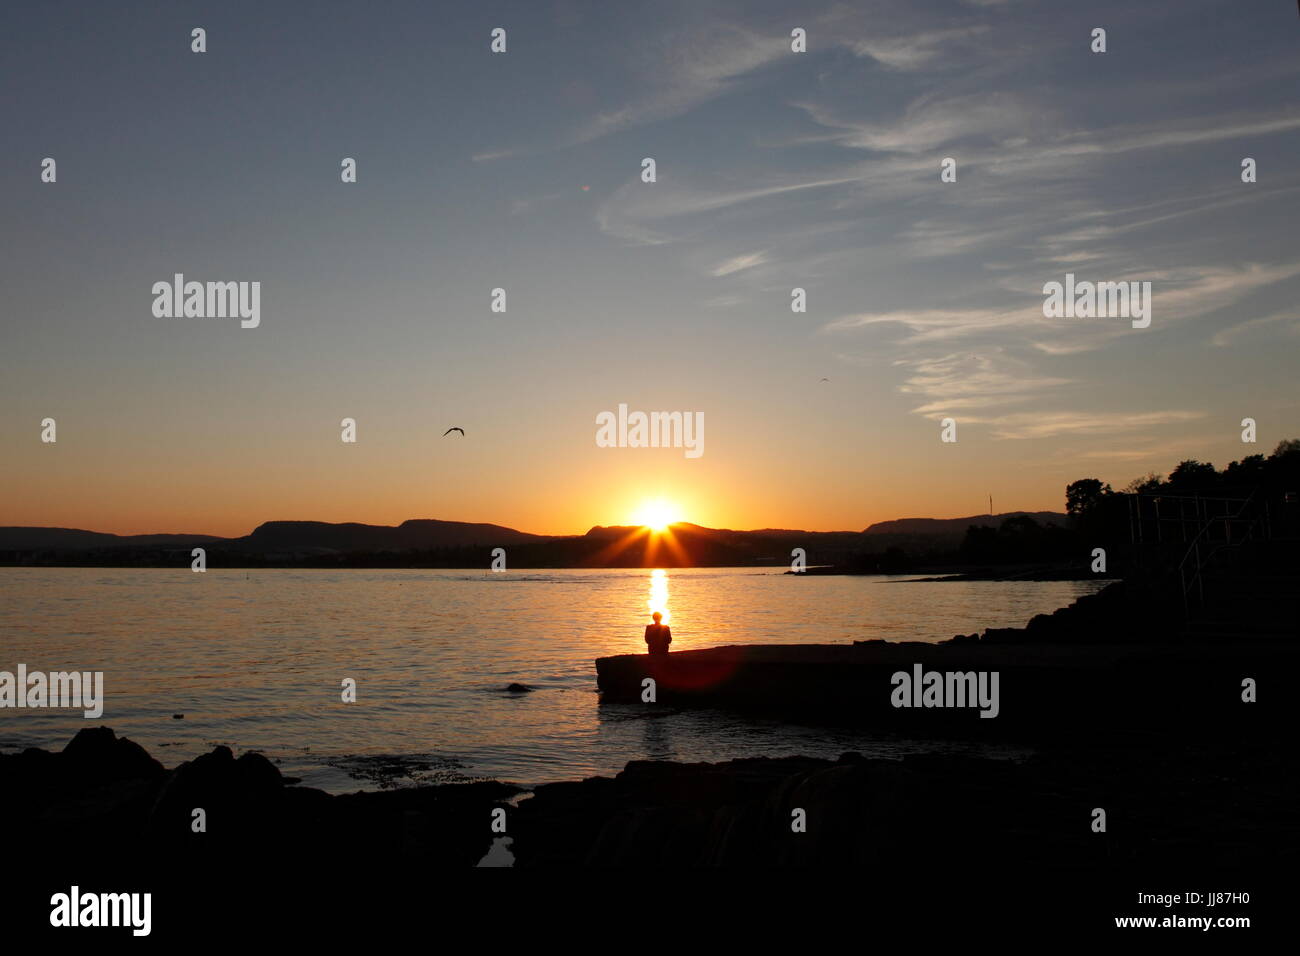 Eine Frau beobachtet den Sonnenuntergang von der beliebteste Strand, Huk, in Oslo, Norwegen. Entspannen Sie, geniessen Sie, meditieren Sie, Achtsamkeit Stockfoto